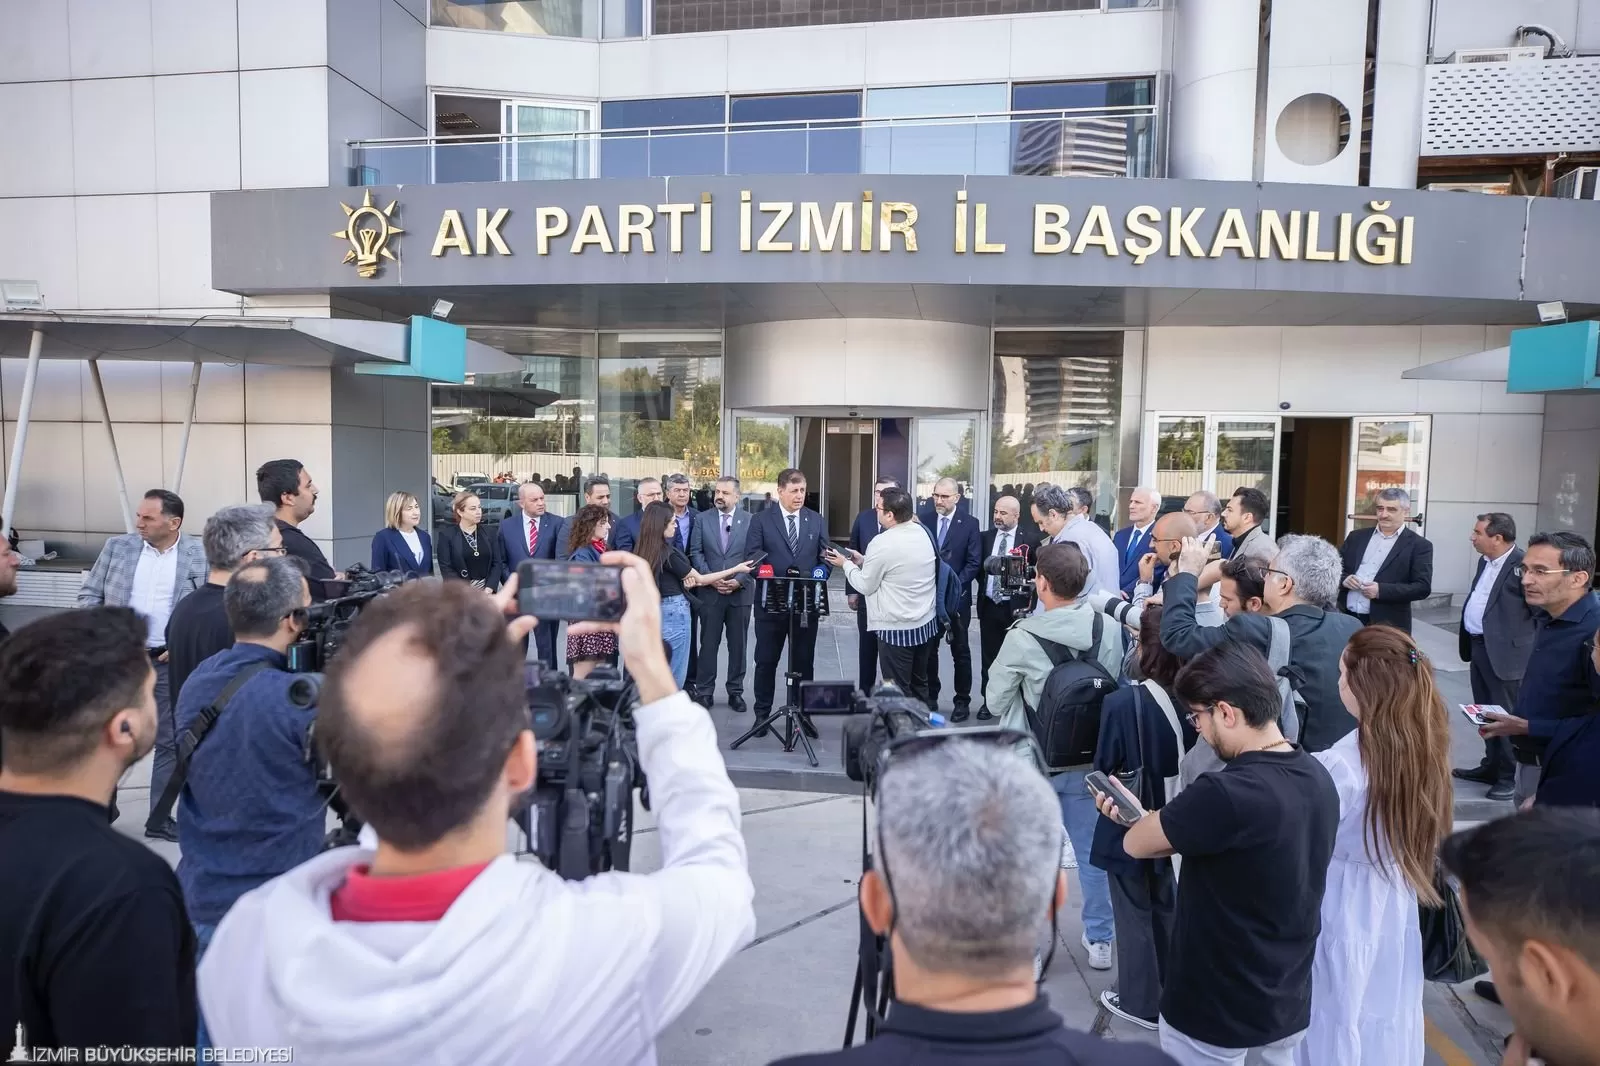 İzmir Büyükşehir Belediye Başkanı Dr. Cemil Tugay, seçim sürecinde gösterilen etik tavır için AK Parti İzmir İl Başkanlığı'nı ziyaret ederek teşekkür etti. 